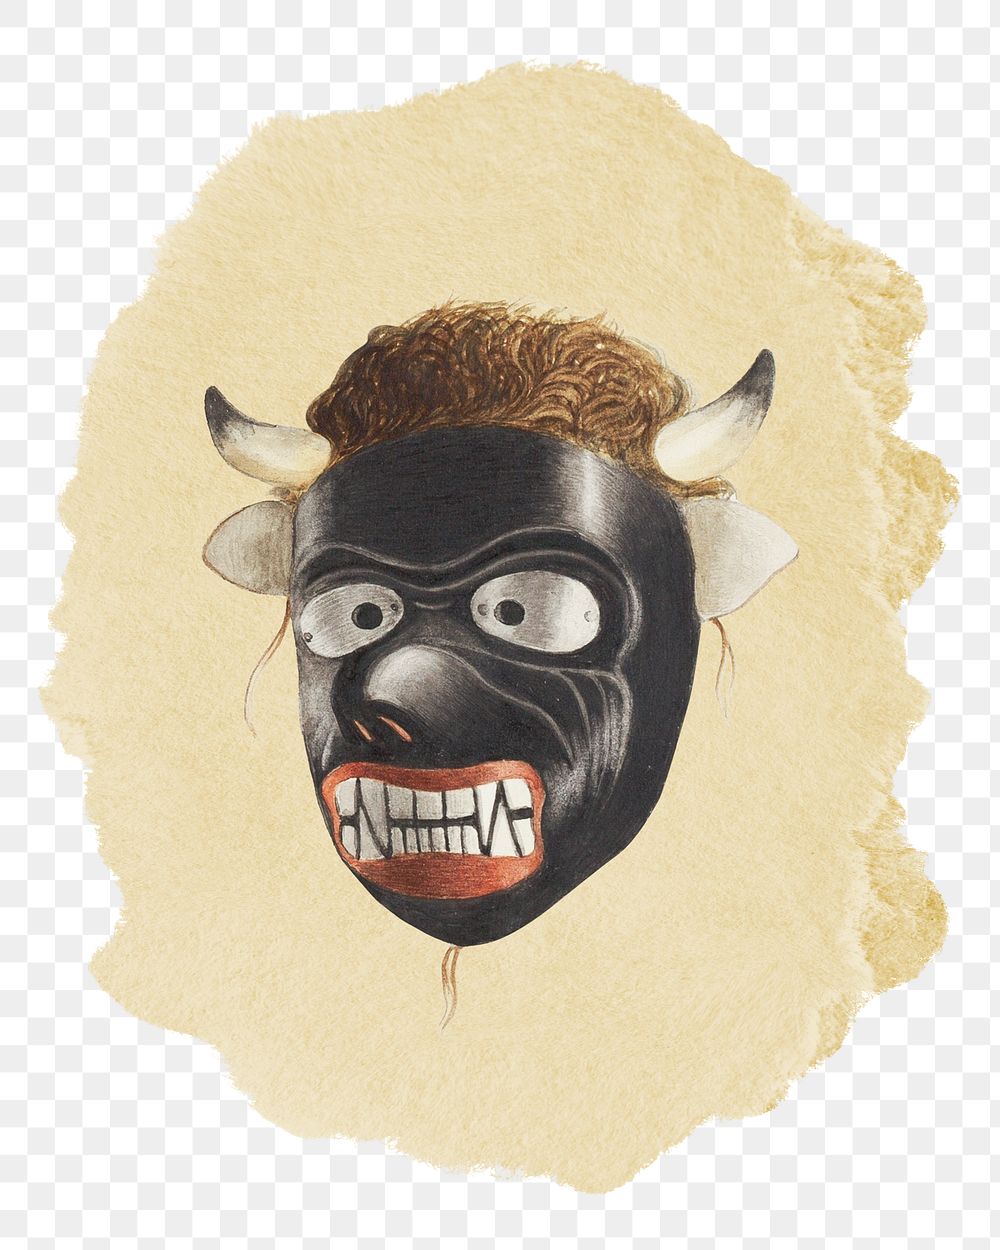 Png evil mask sticker, vintage illustration on ripped paper, transparent background